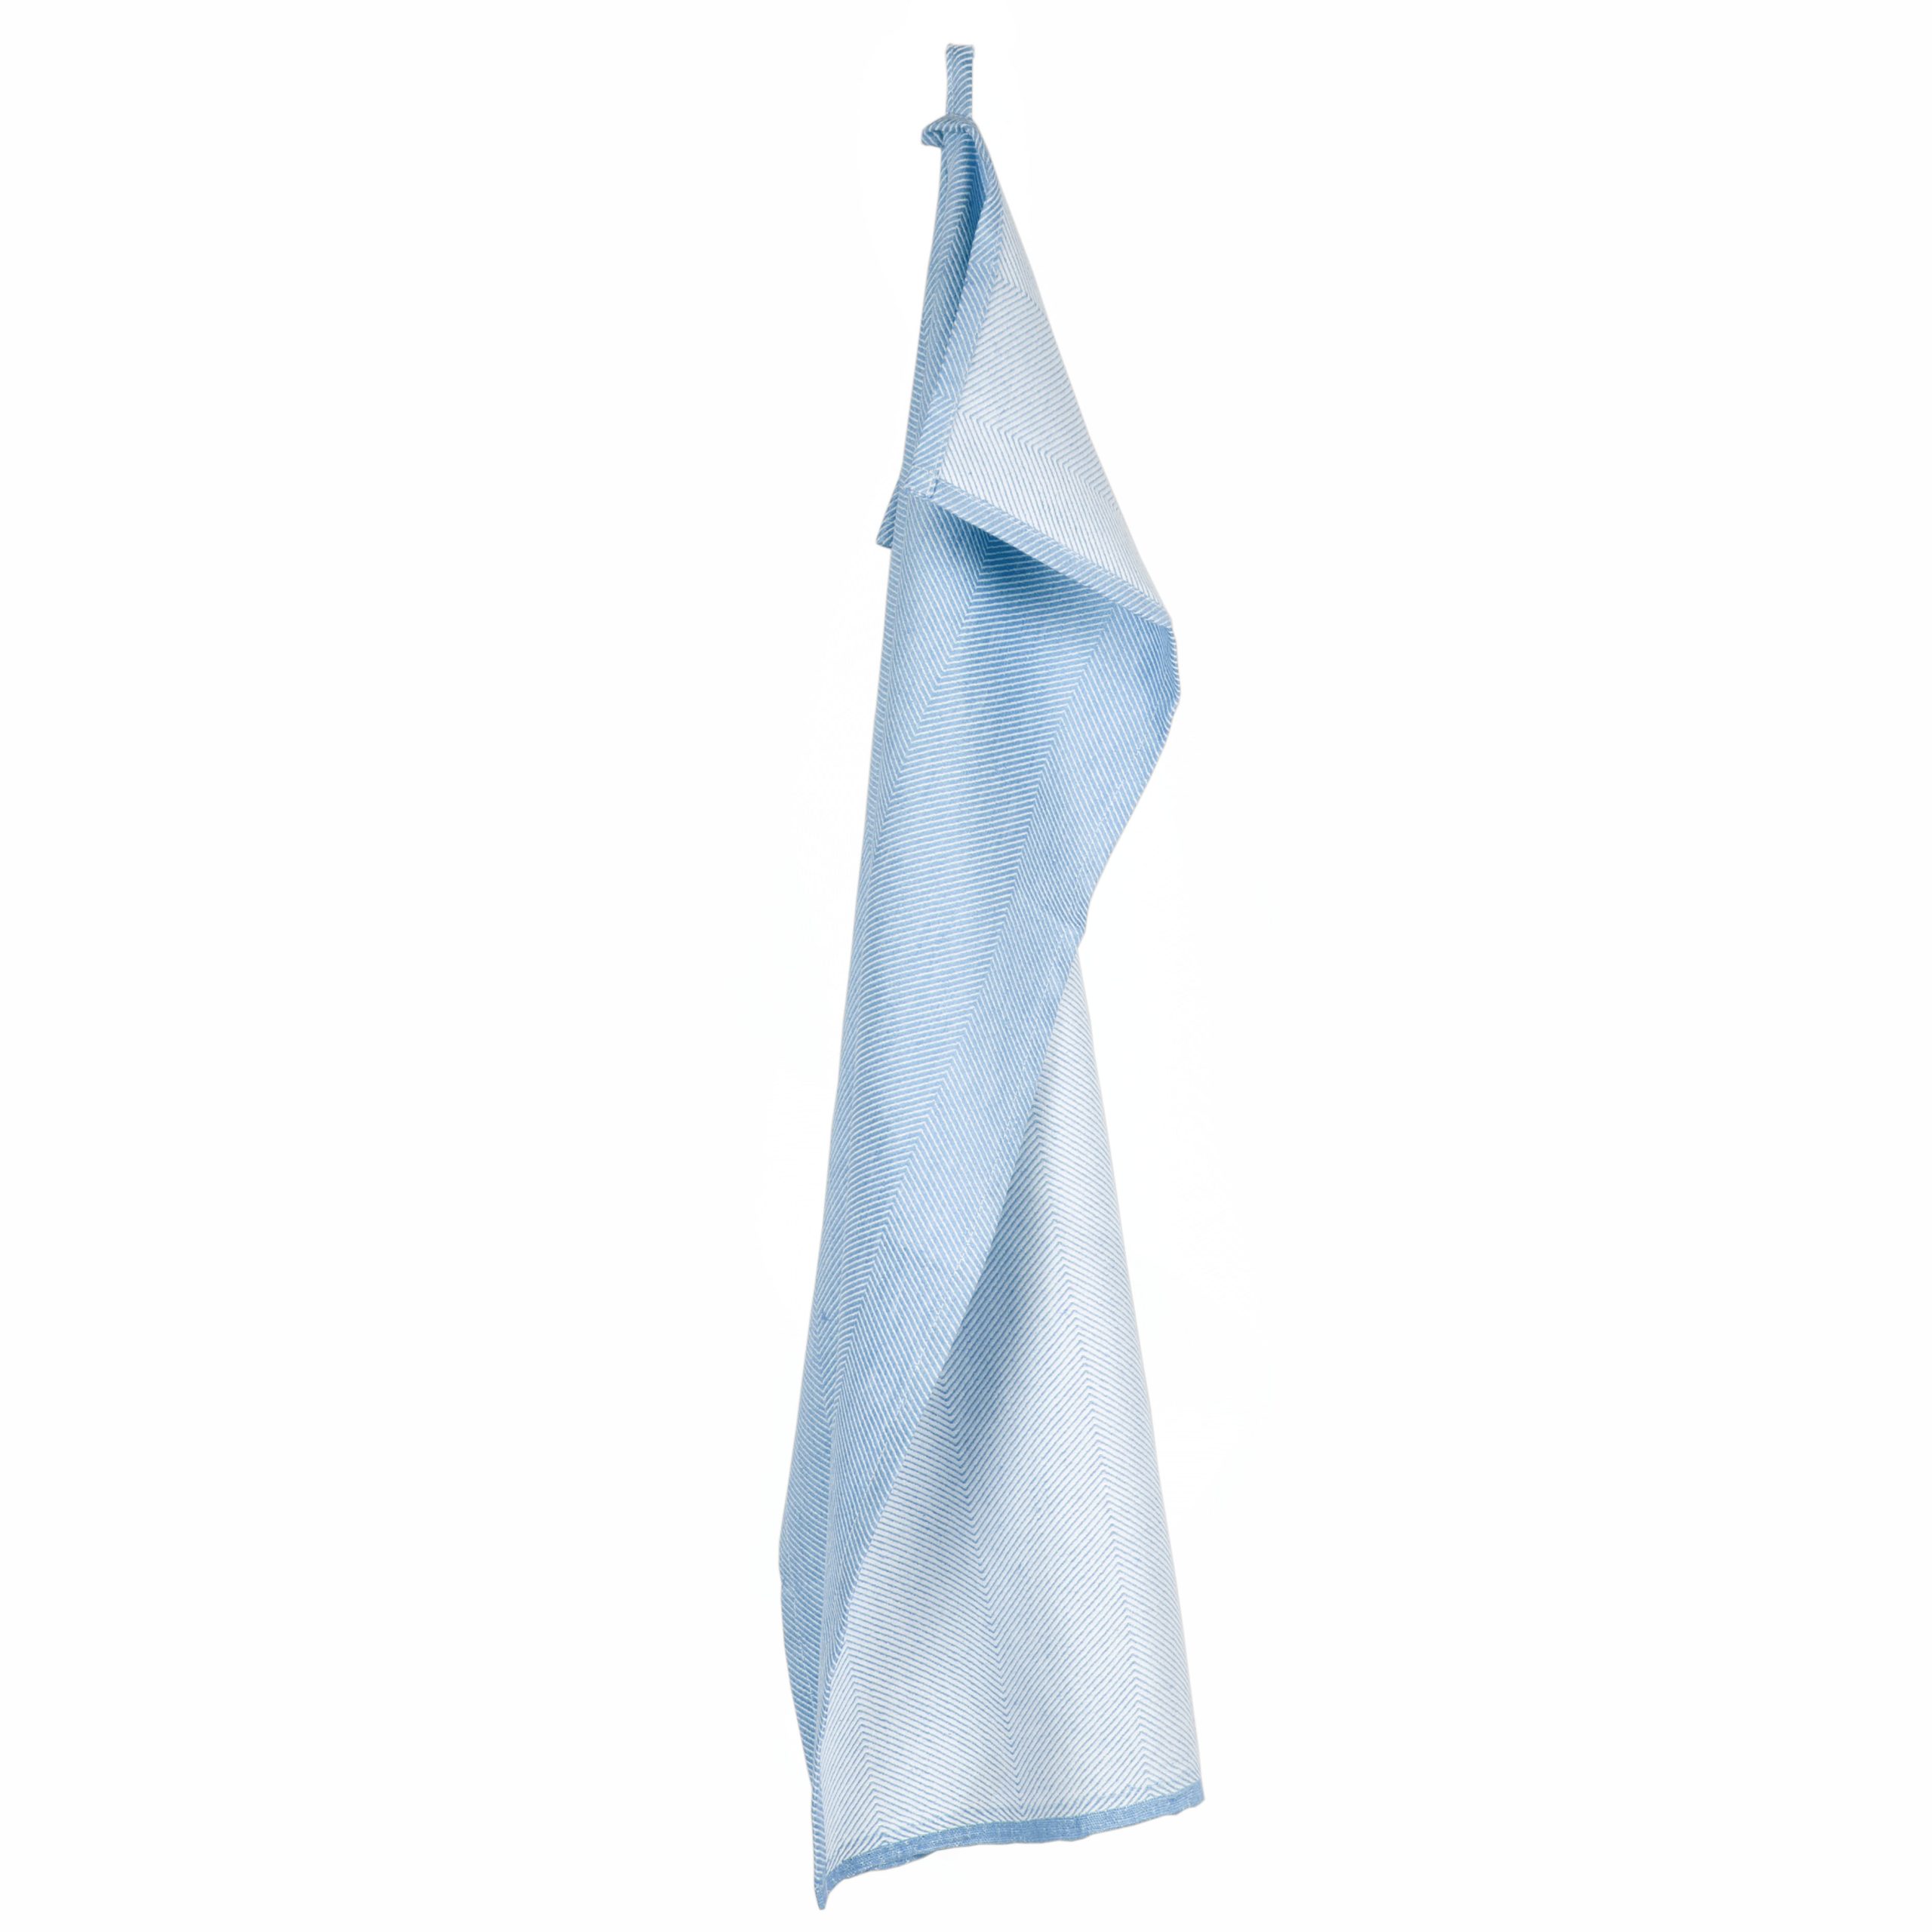 Tea towel, sky blue, linen/cotton, design by Anne Rosenberg, RosenbergCph